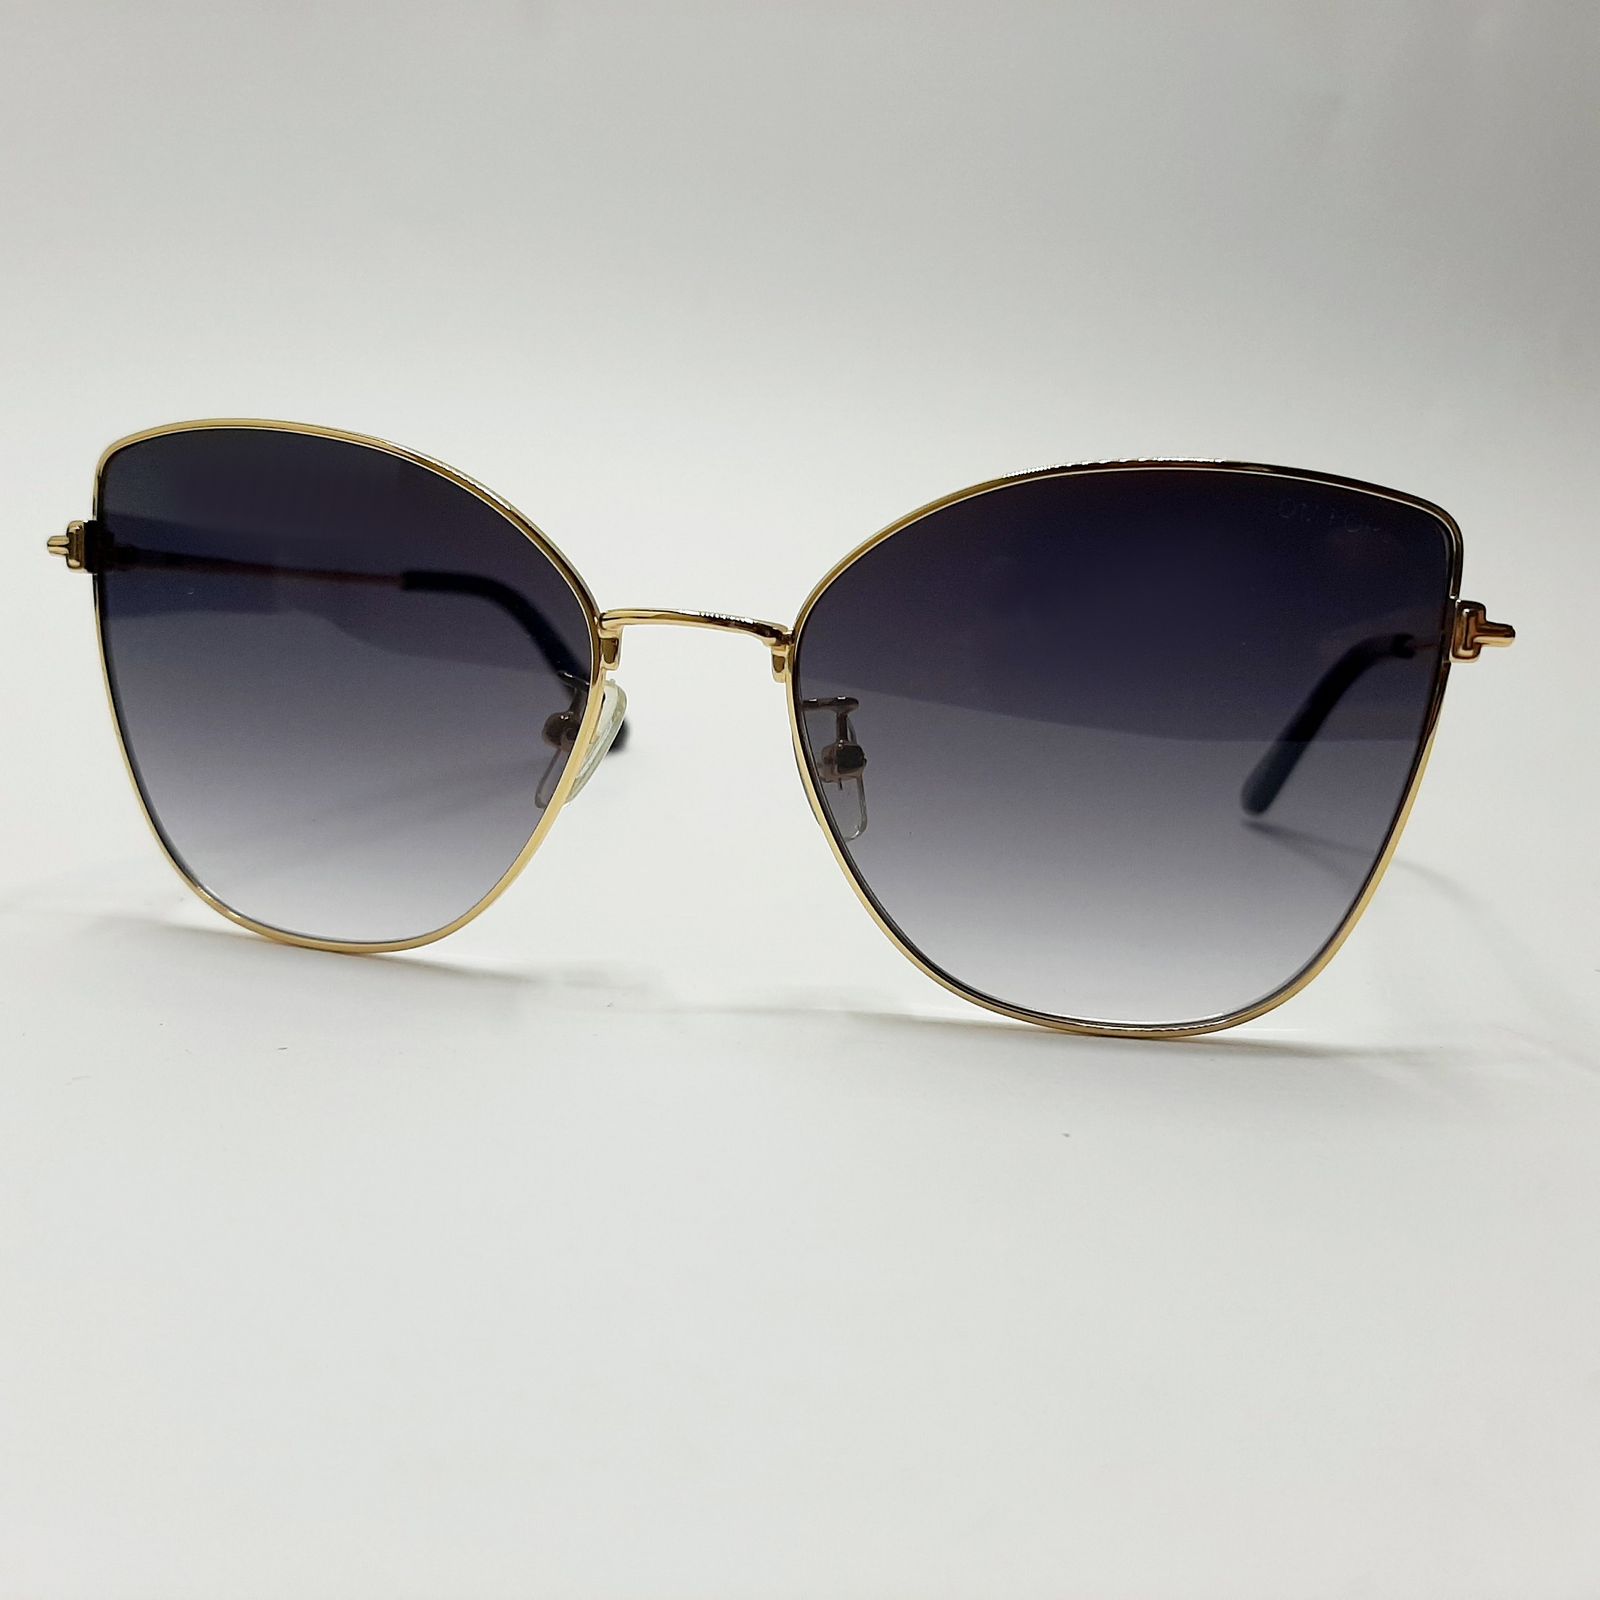 عینک آفتابی زنانه تام فورد مدل FT0718c1 -  - 2